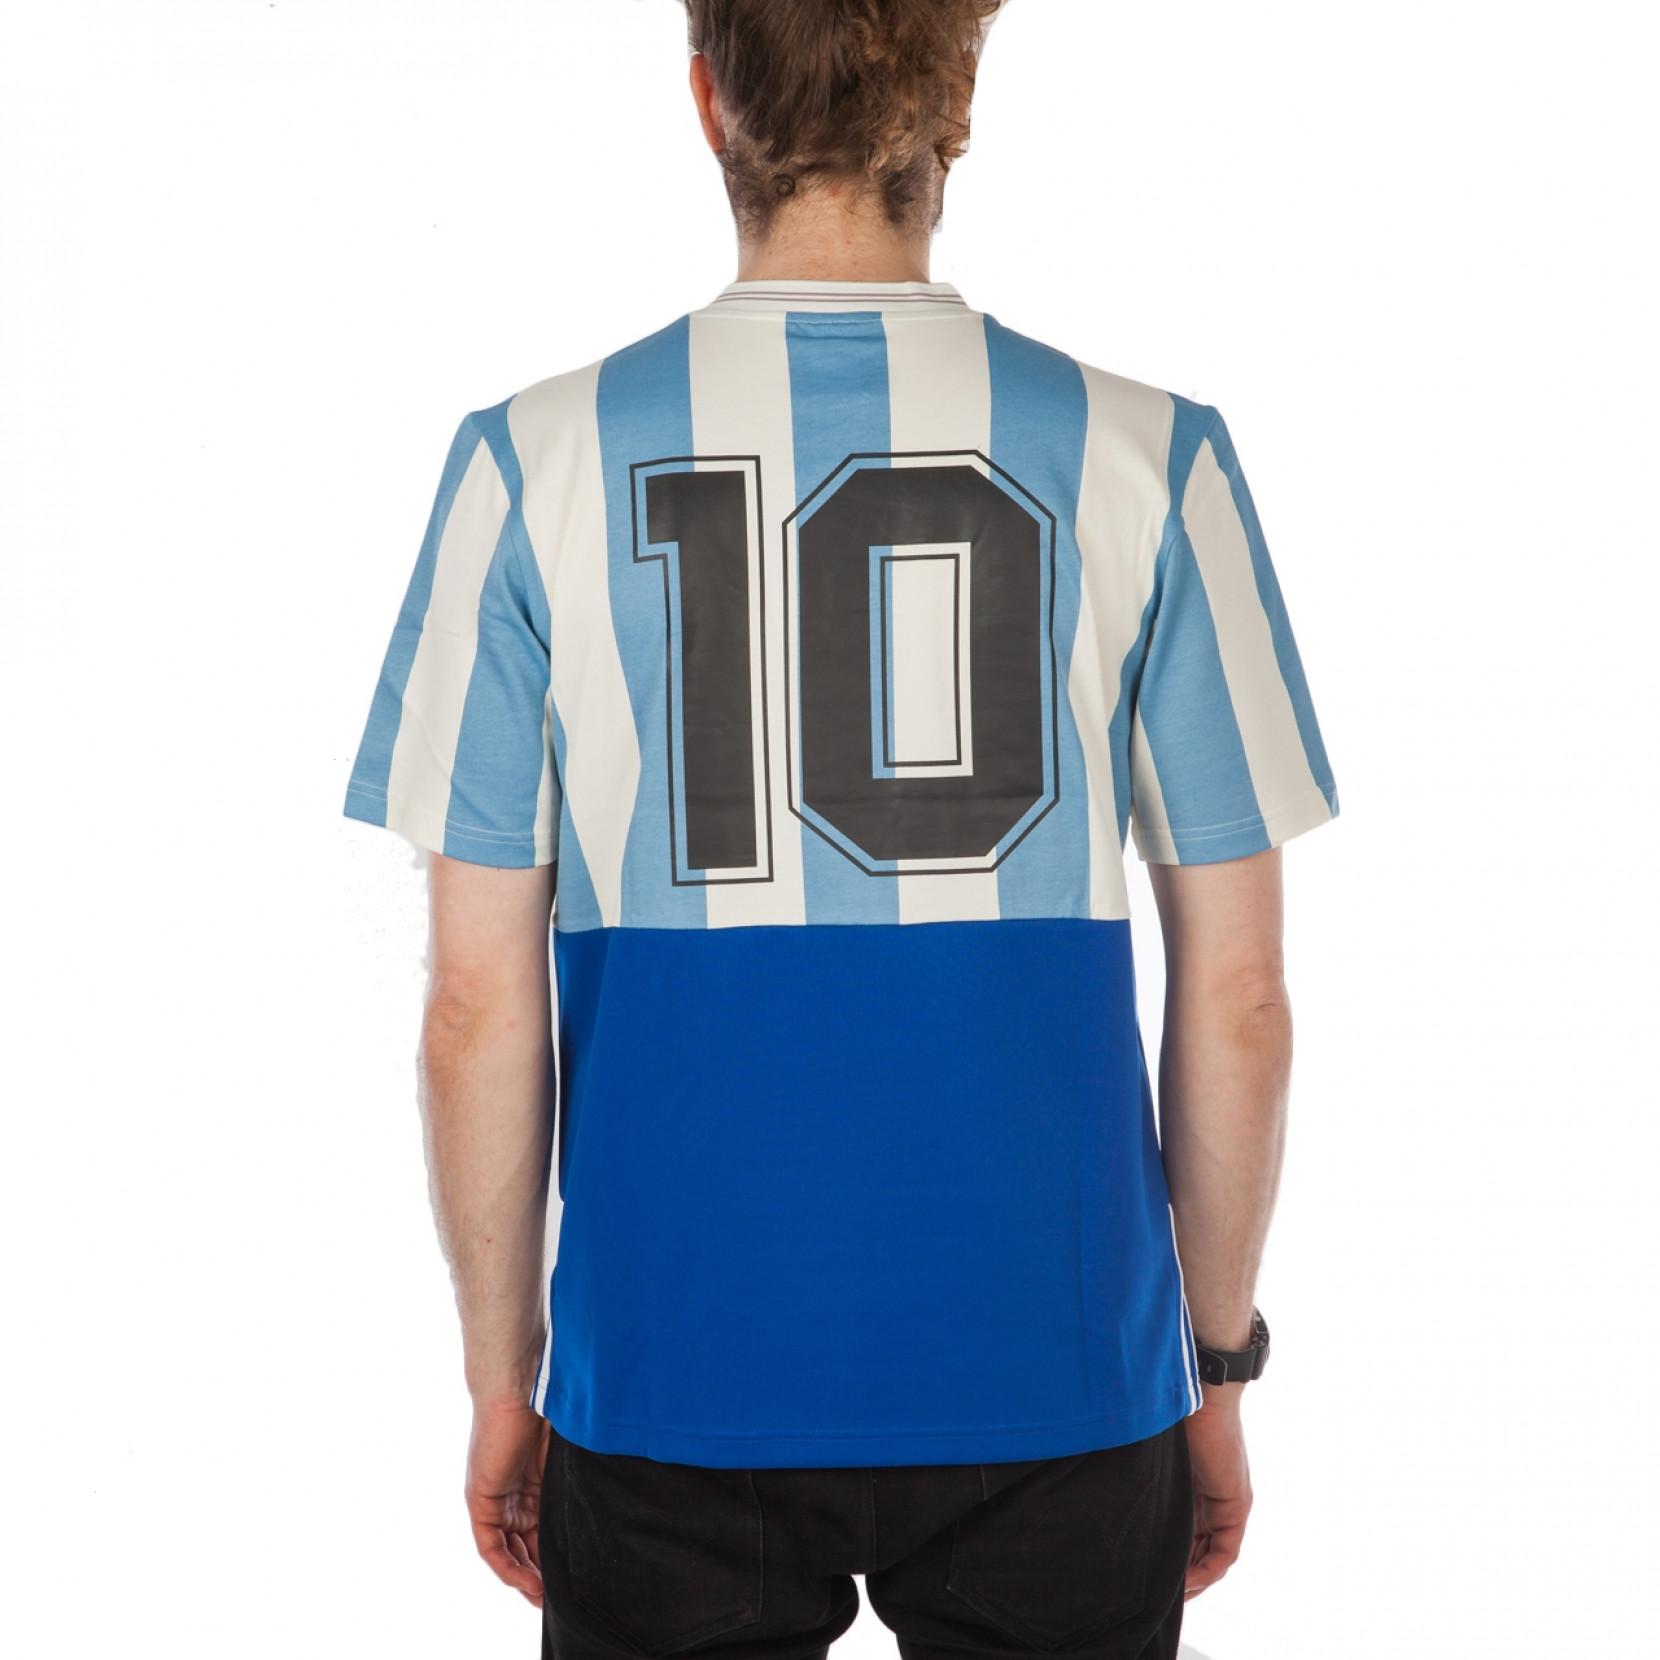 argentina mashup jersey